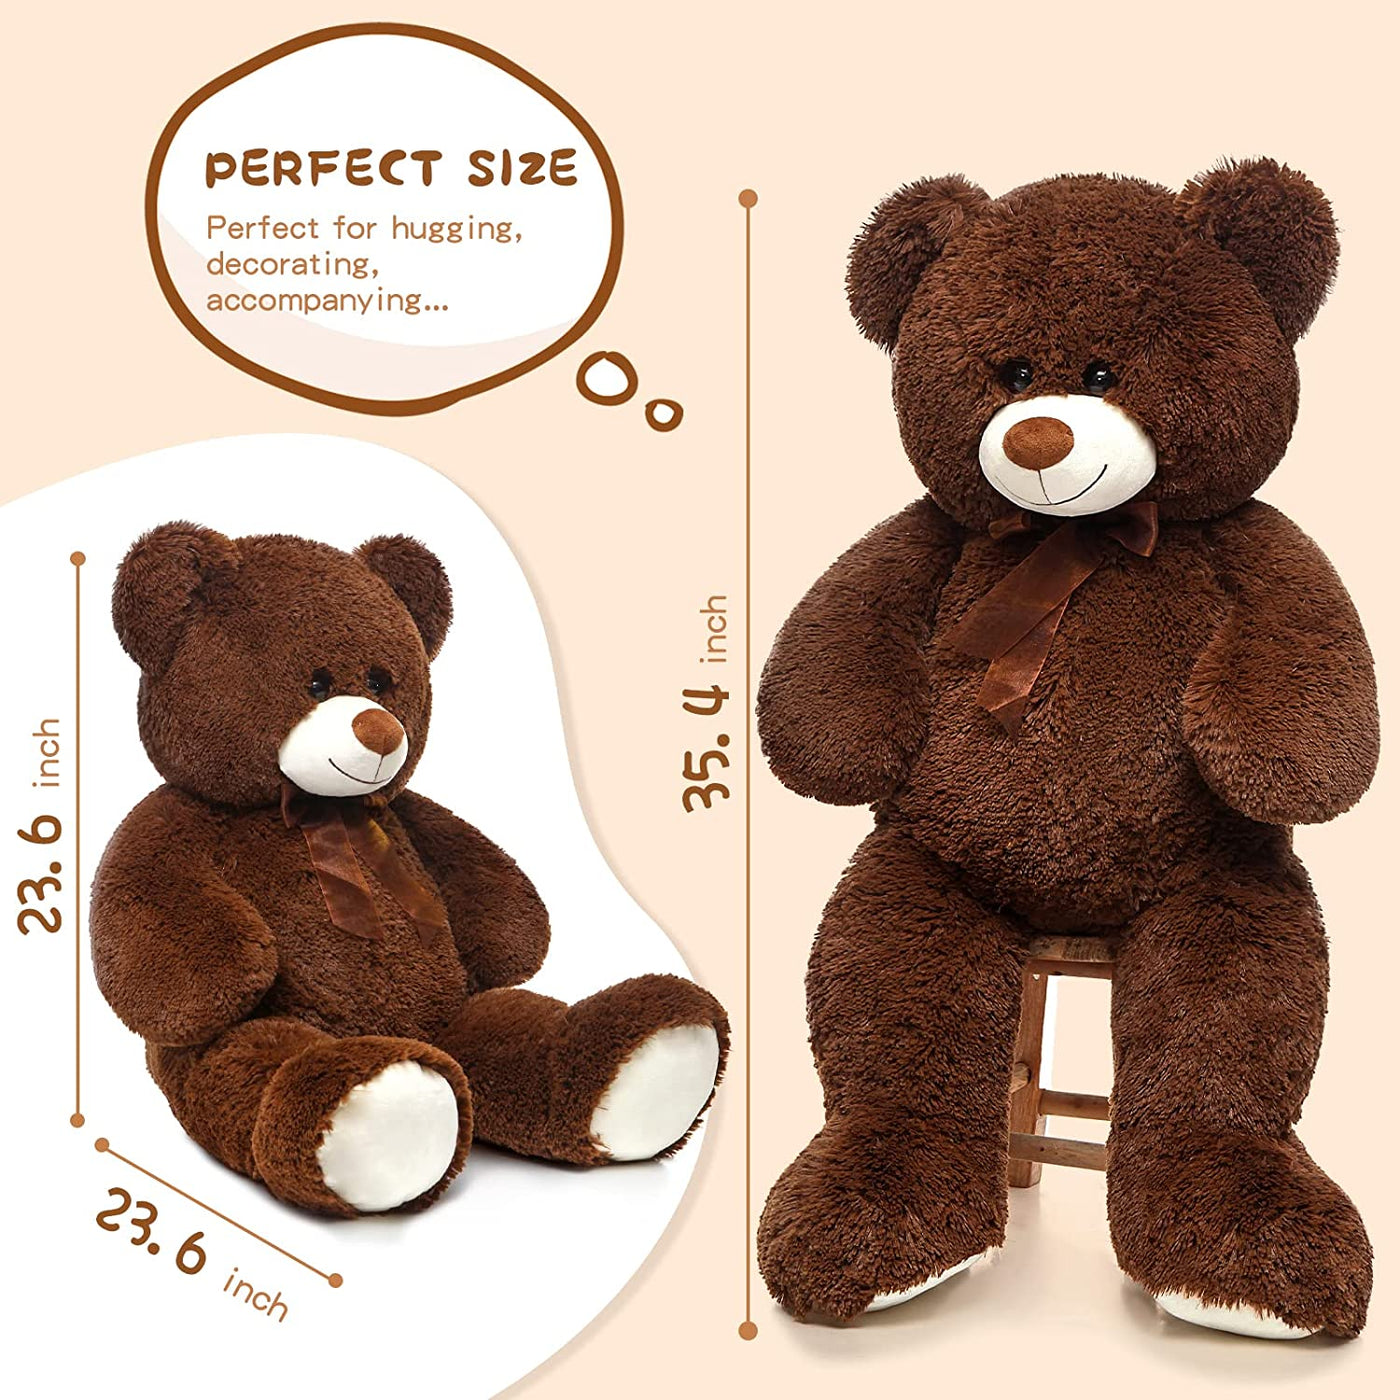 Giant Teddy Bear Plush Toy, Coffee, 35.4/51 Inches - MorisMos Plush Toys